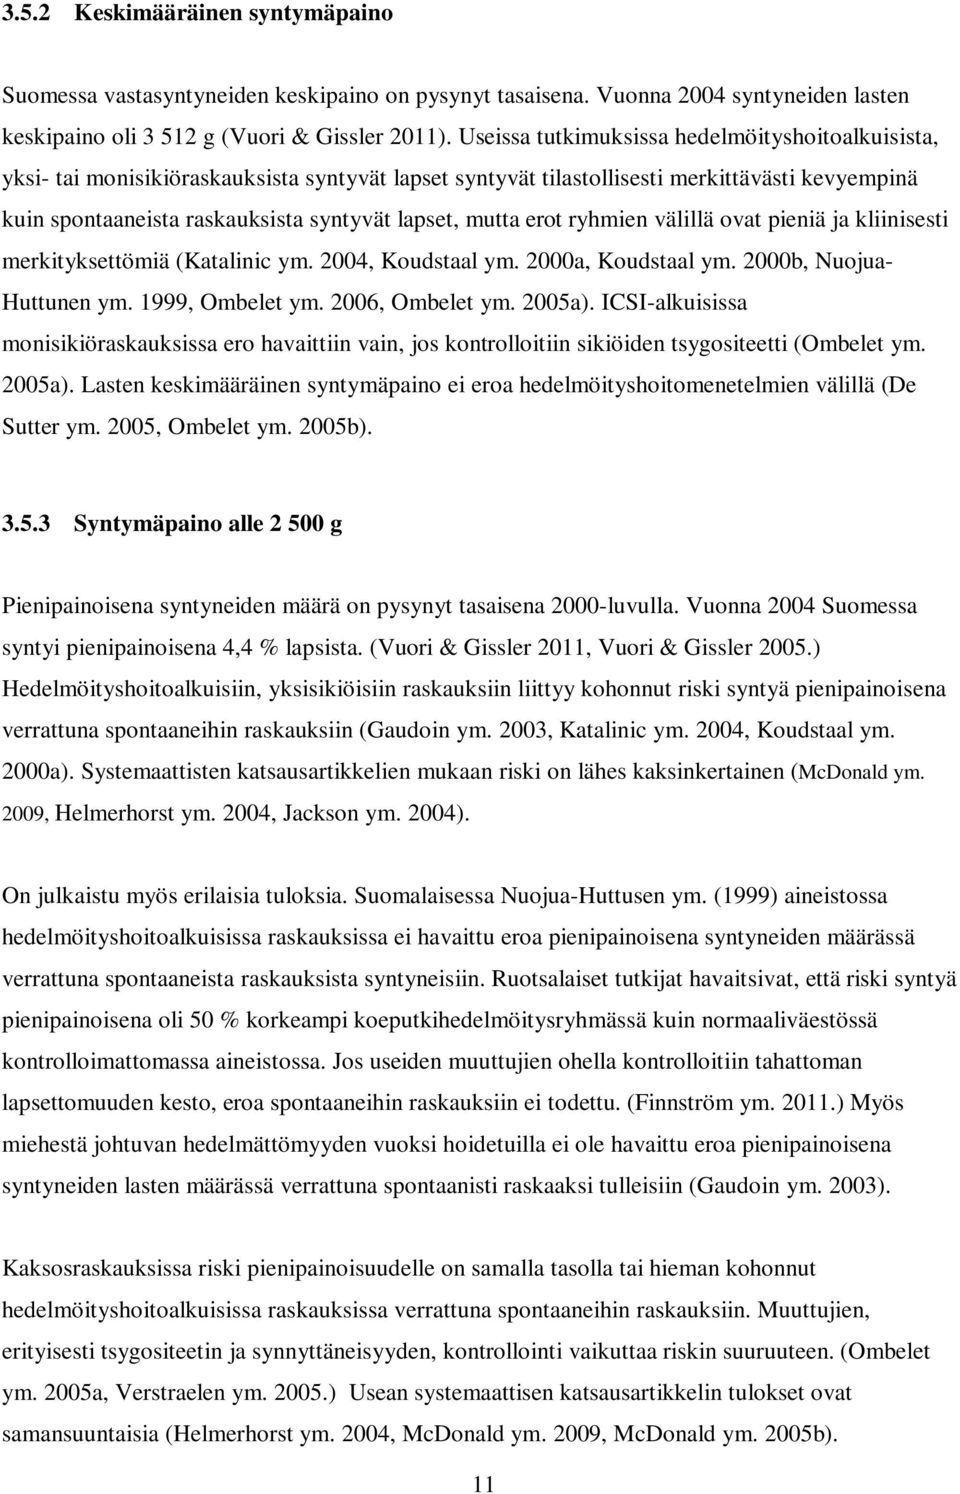 mutta erot ryhmien välillä ovat pieniä ja kliinisesti merkityksettömiä (Katalinic ym. 2004, Koudstaal ym. 2000a, Koudstaal ym. 2000b, Nuojua- Huttunen ym. 1999, Ombelet ym. 2006, Ombelet ym. 2005a).